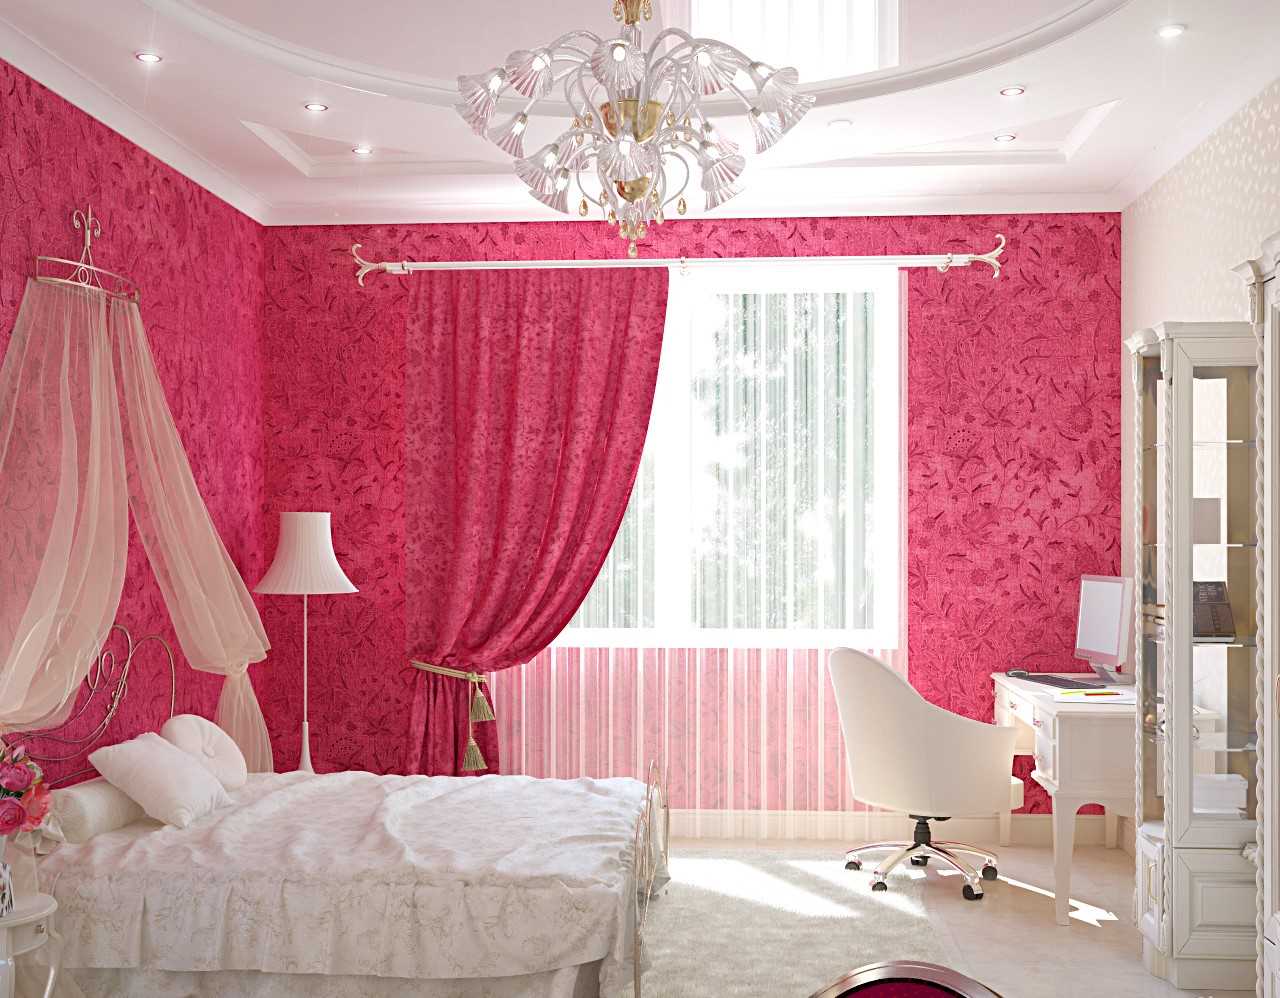 فكرة استخدام اللون الوردي في غرفة داخلية غير عادية